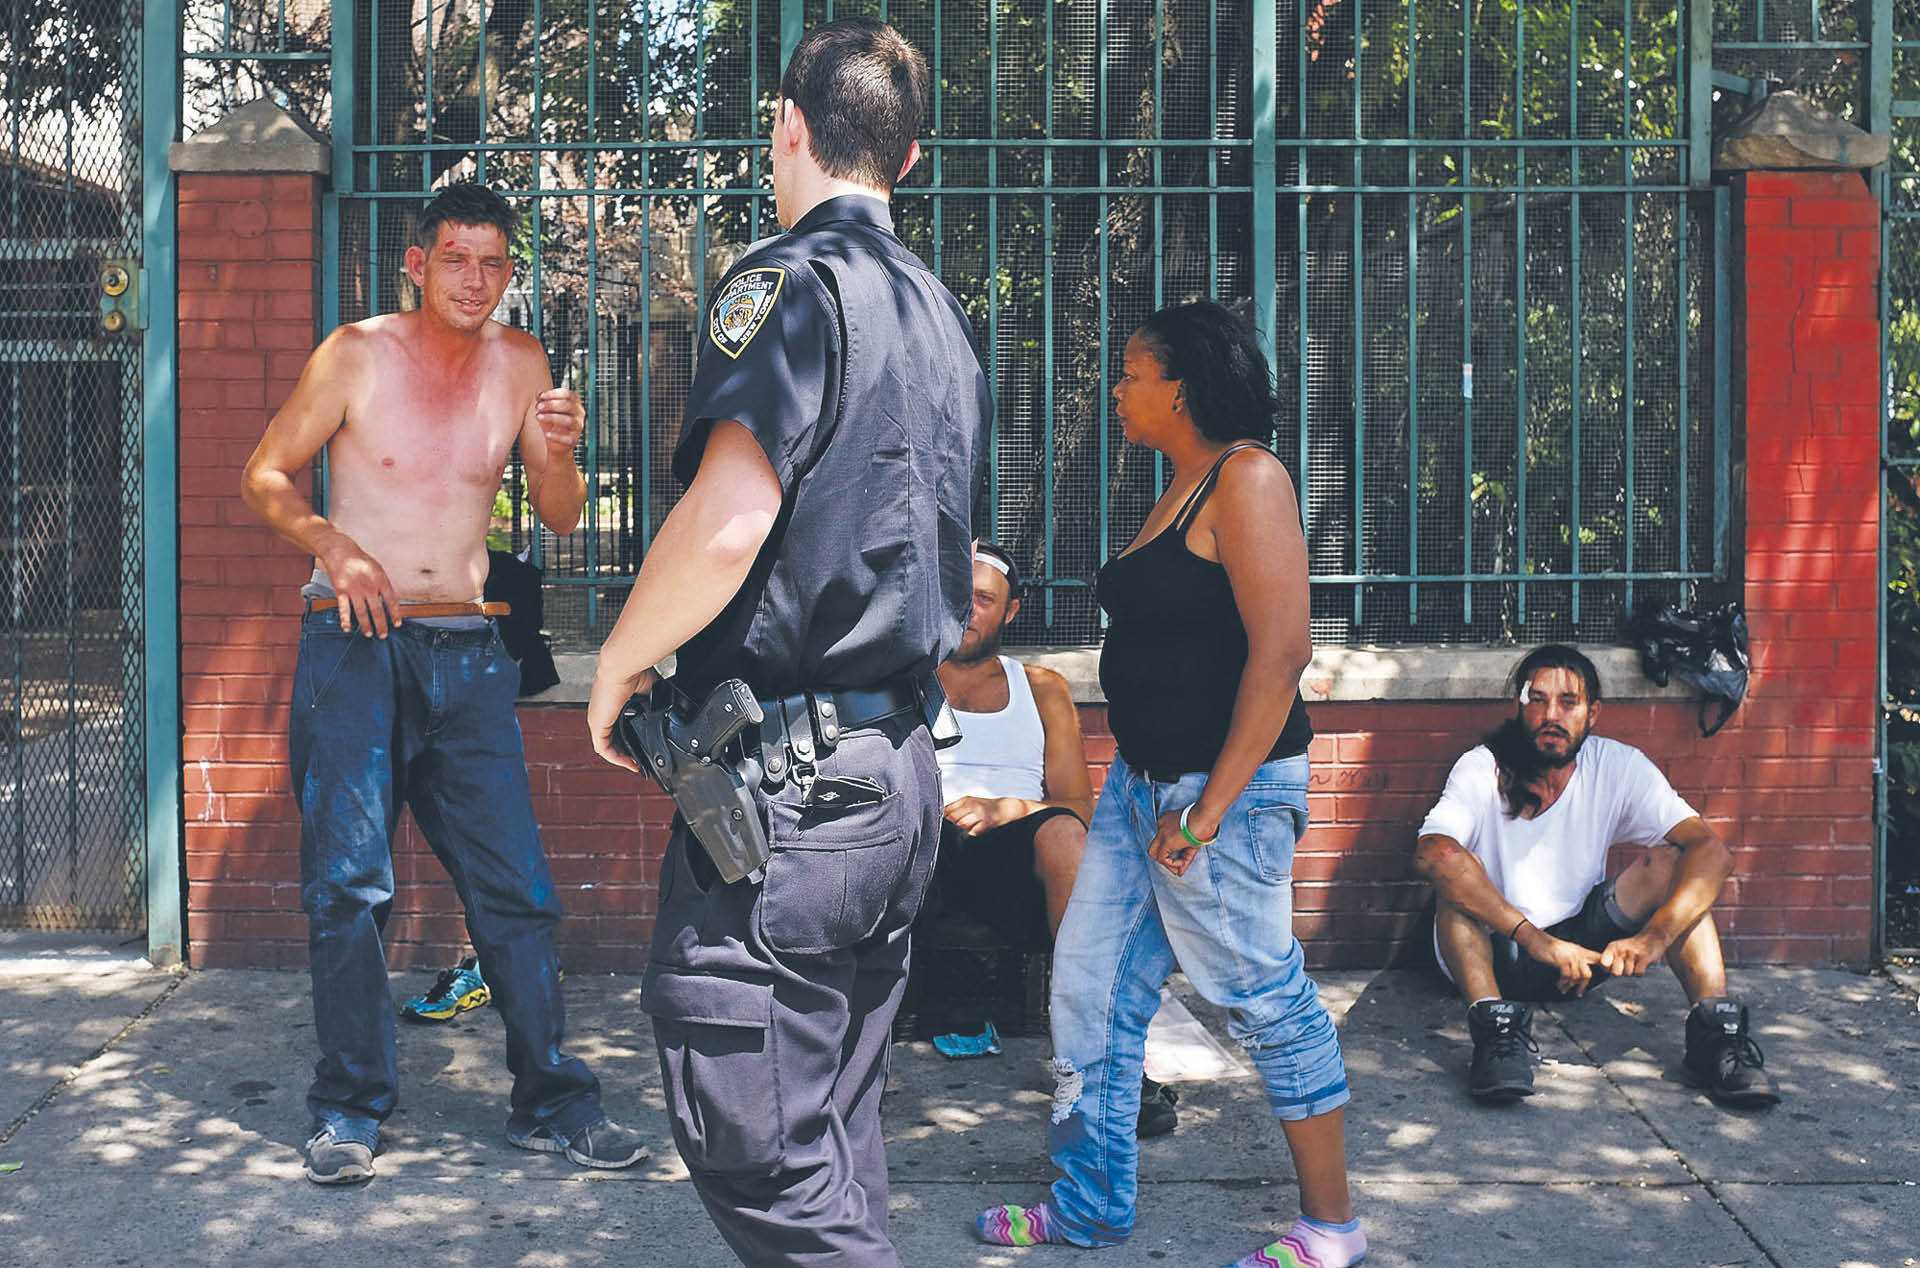 Utarczka w nowojorskiej dzielnicy Harlem między policją a grupą mężczyzn odurzonych syntetyczną marihuaną (tzw. K2 lub Spiece'em), 5 sierpnia 2015 r.